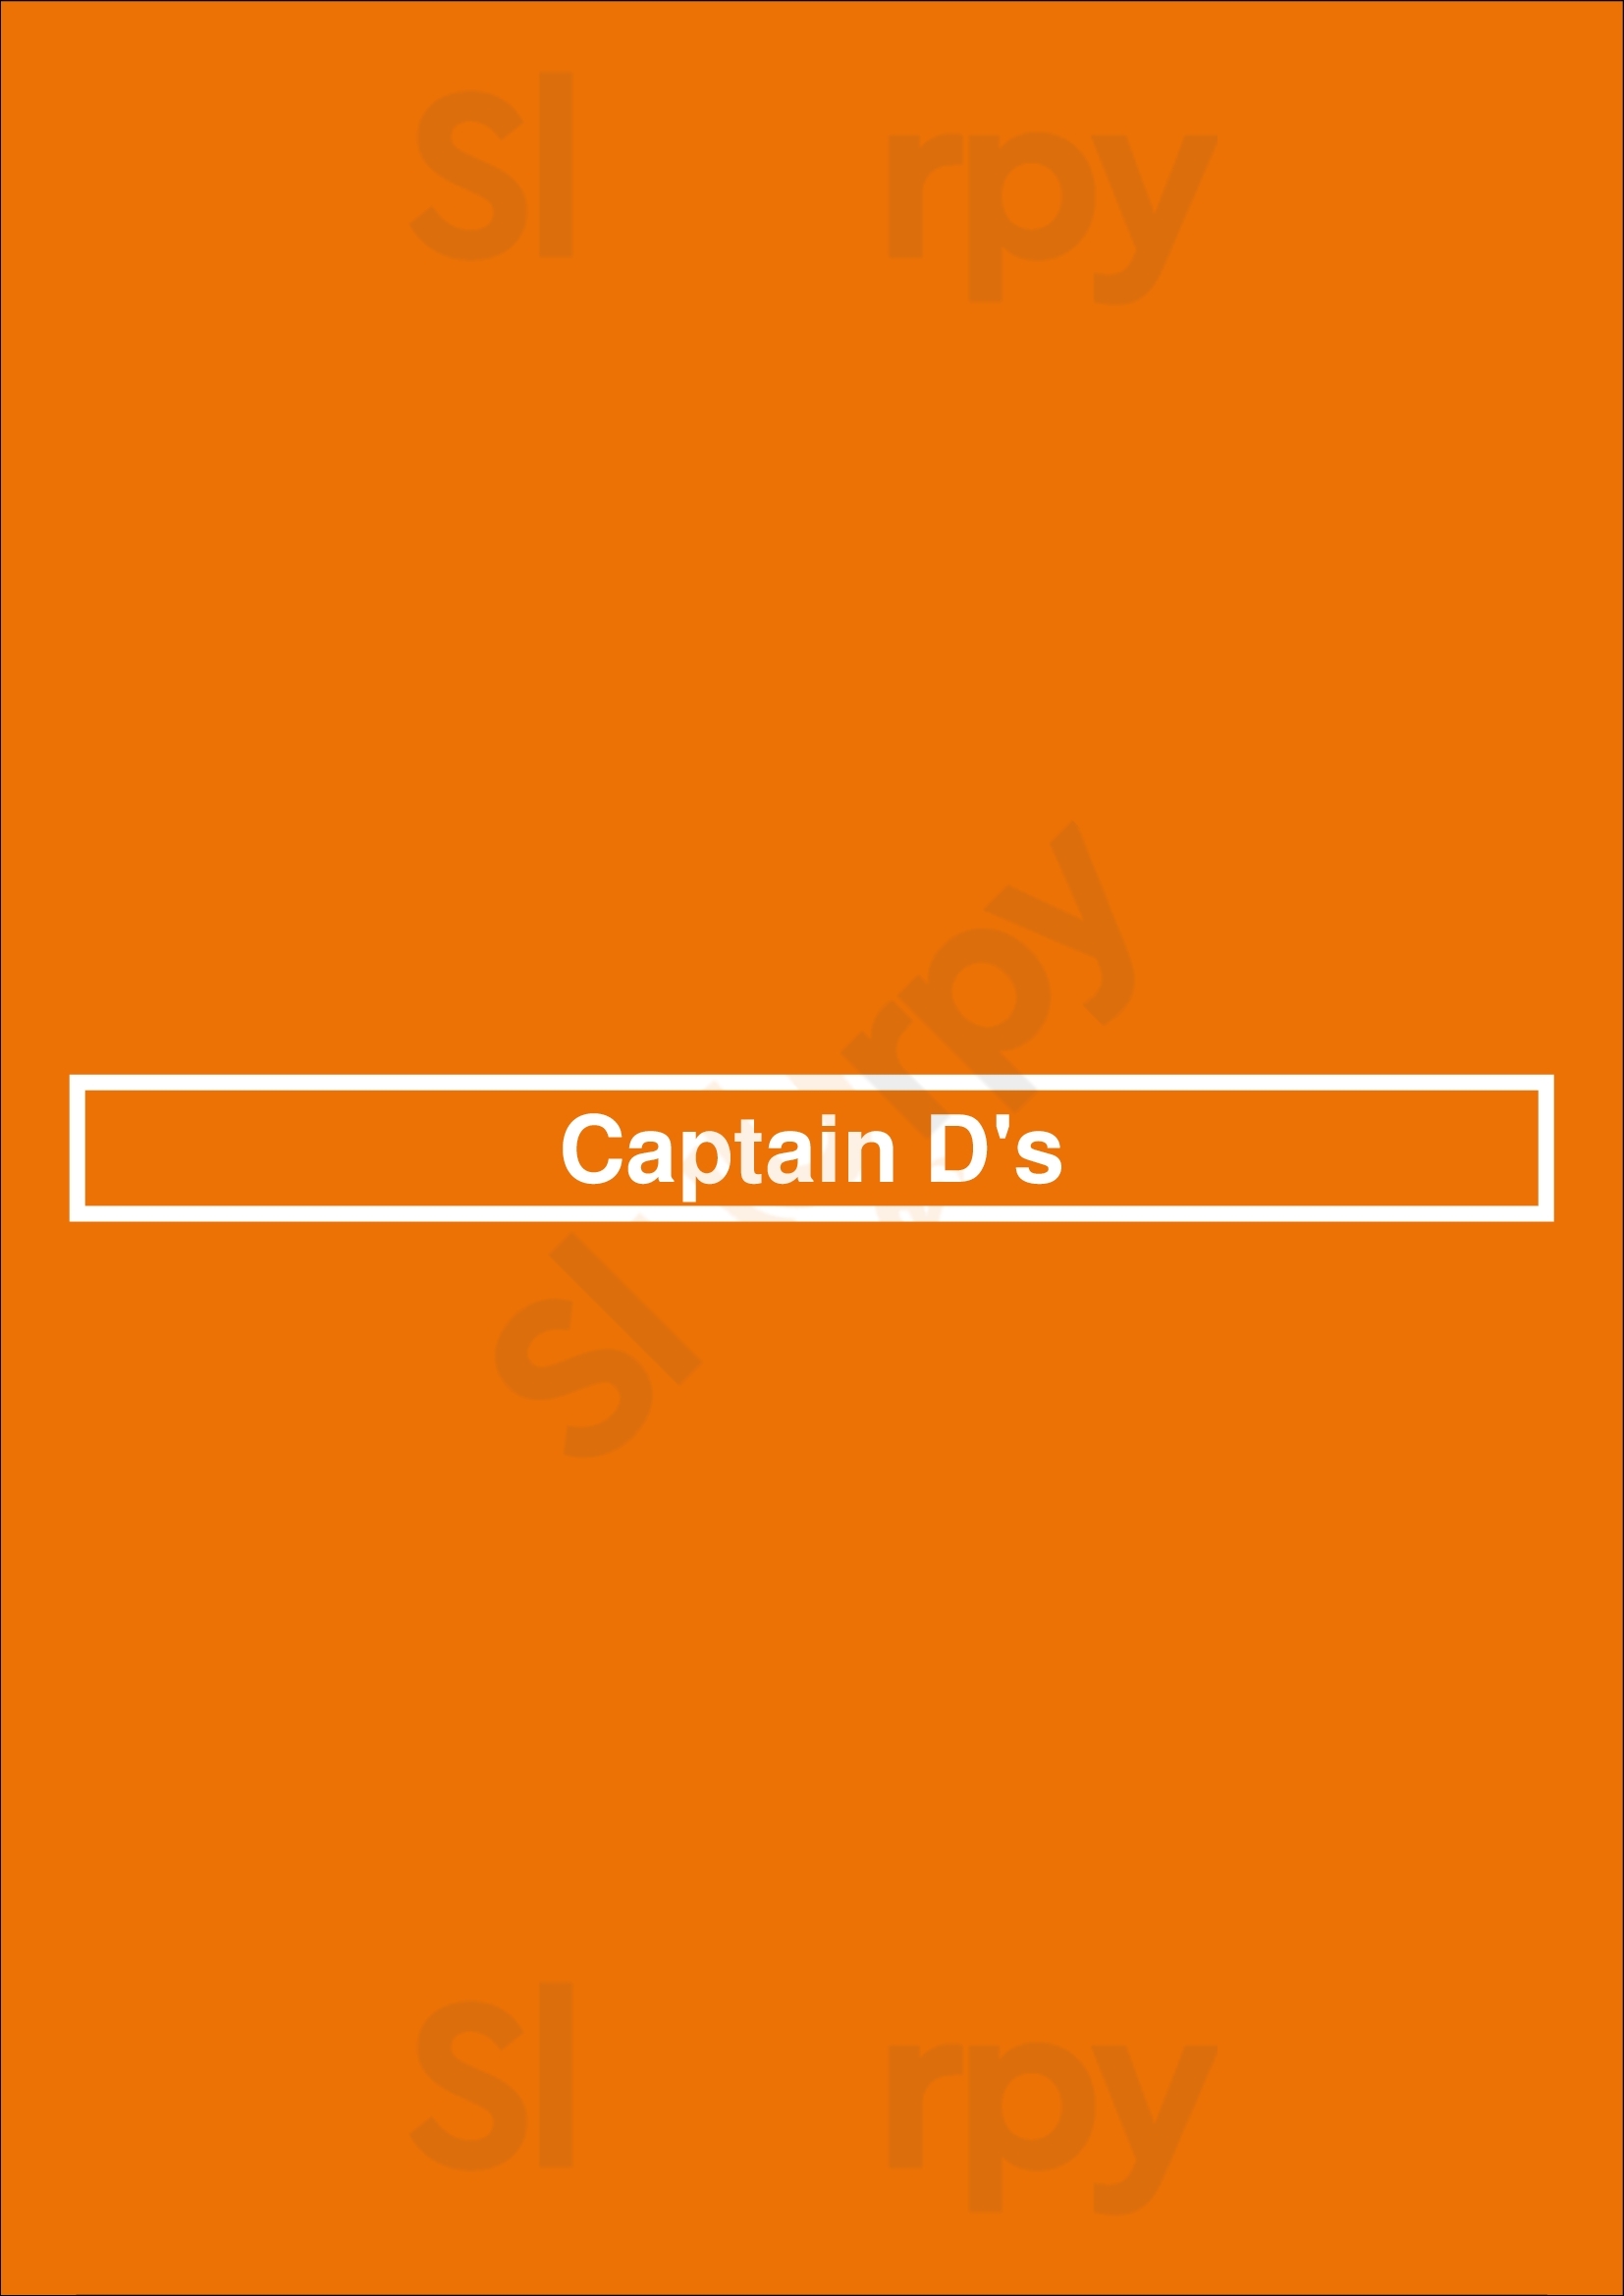 Captain D's Birmingham Menu - 1